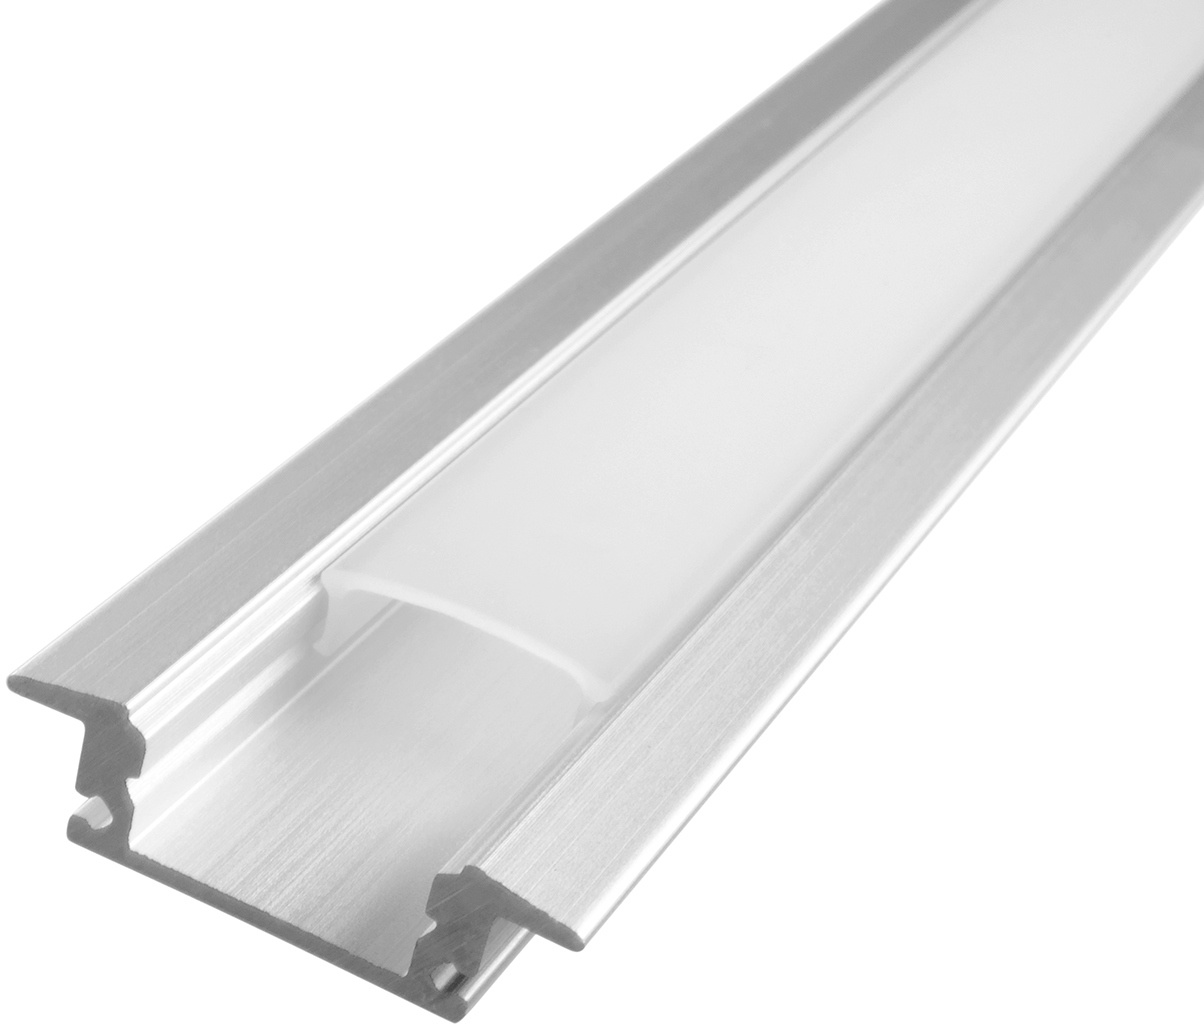 2 Meter Aluprofile Alu Schiene Profil LED Kanal Schiene für LED Strip Profil D mit Milchglas Abdeckung